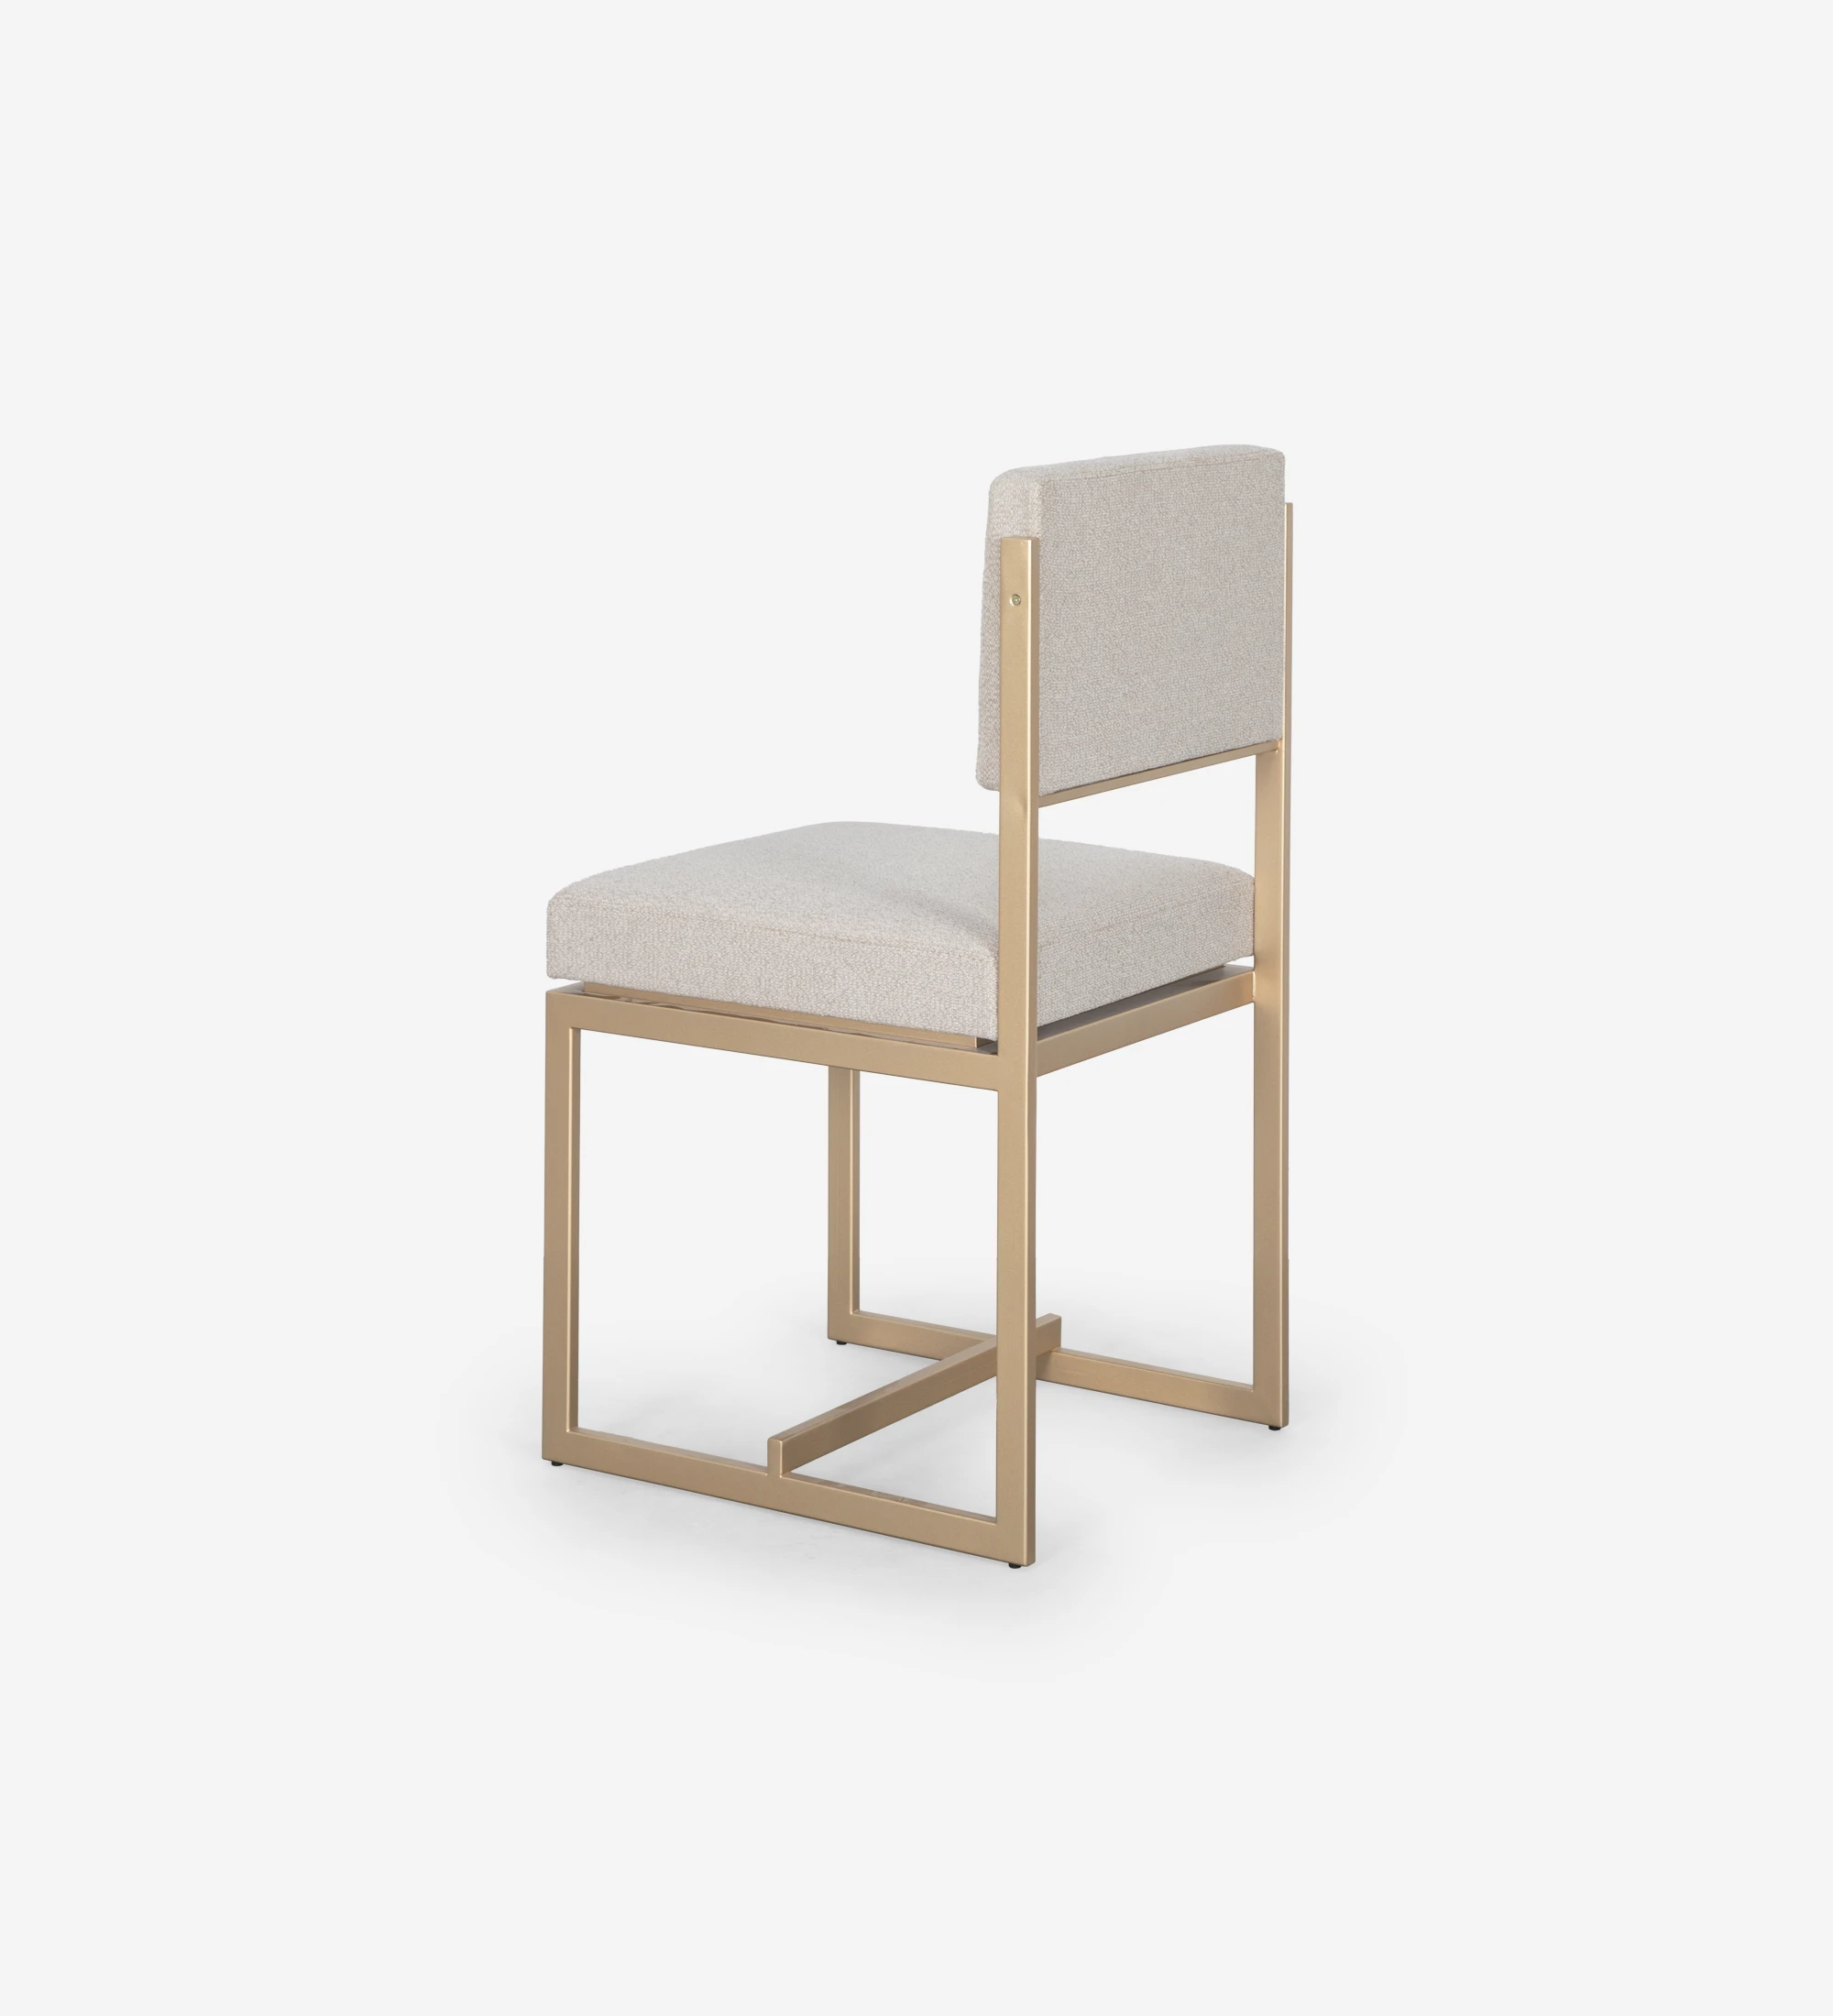 Cadeira com assento e encosto estofado a tecido, com estrutura metálica lacada a dourado